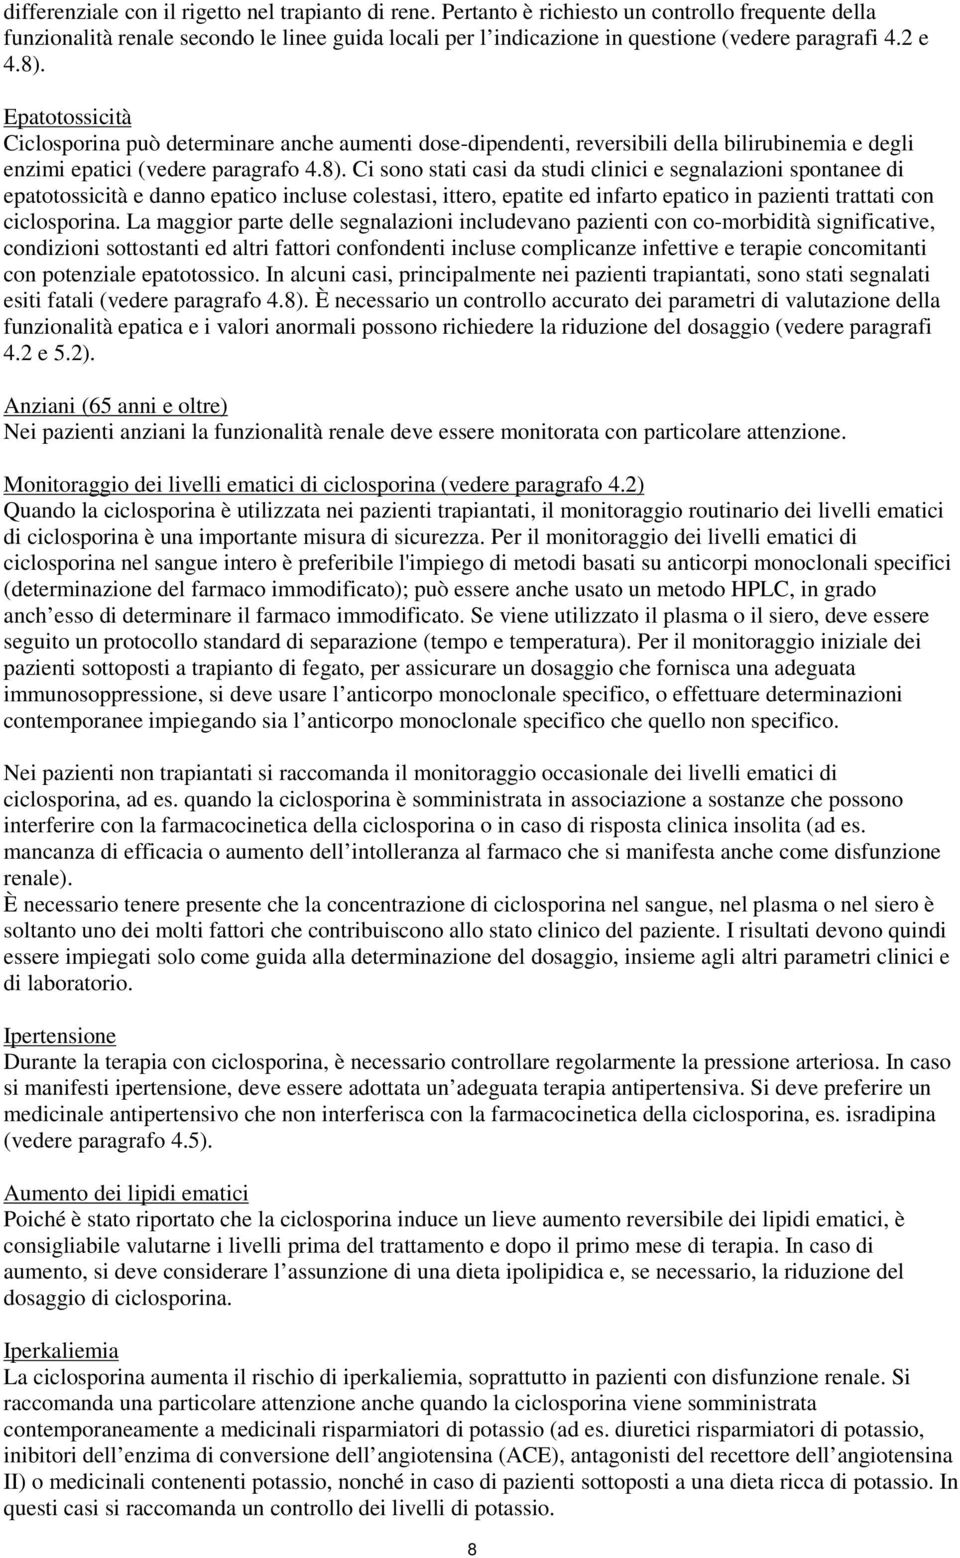 Epatotossicità Ciclosporina può determinare anche aumenti dose-dipendenti, reversibili della bilirubinemia e degli enzimi epatici (vedere paragrafo 4.8).